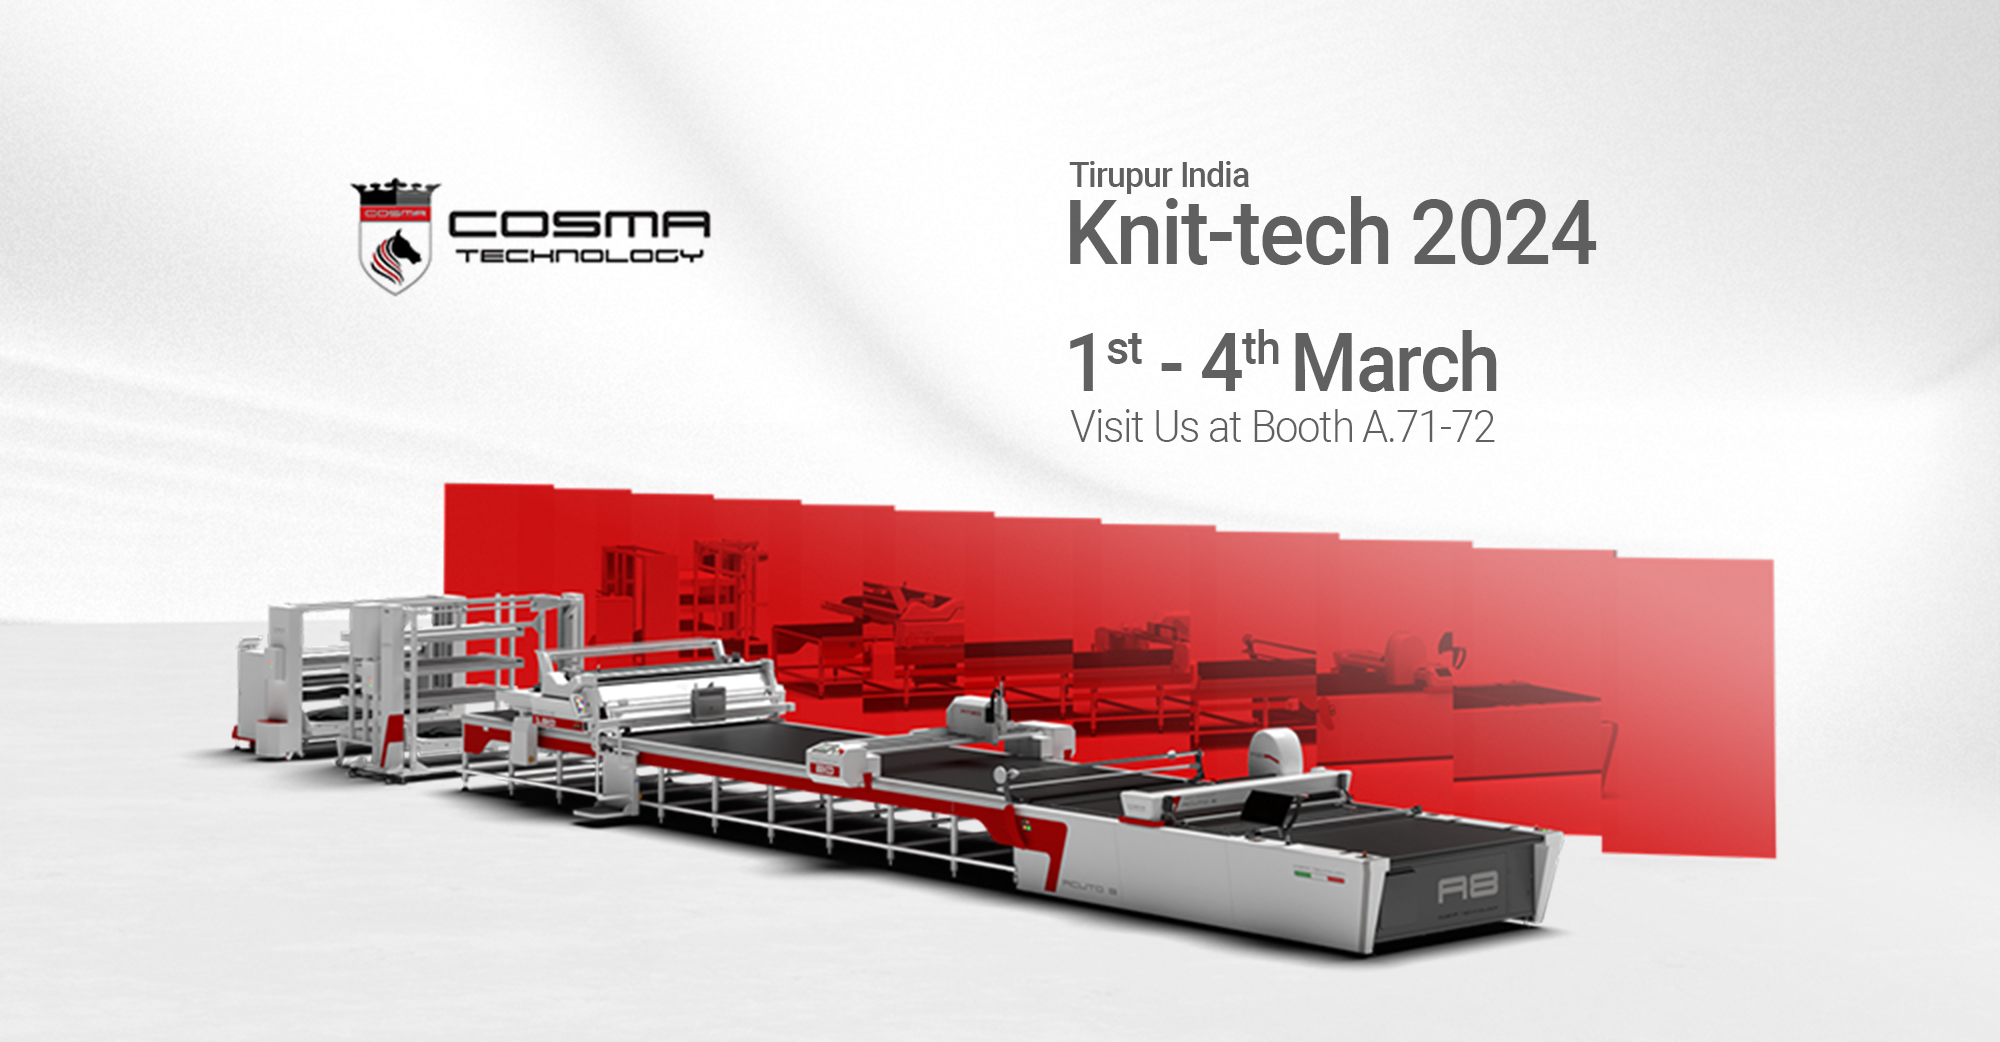 Knit-tech 2024, Tirupur, India